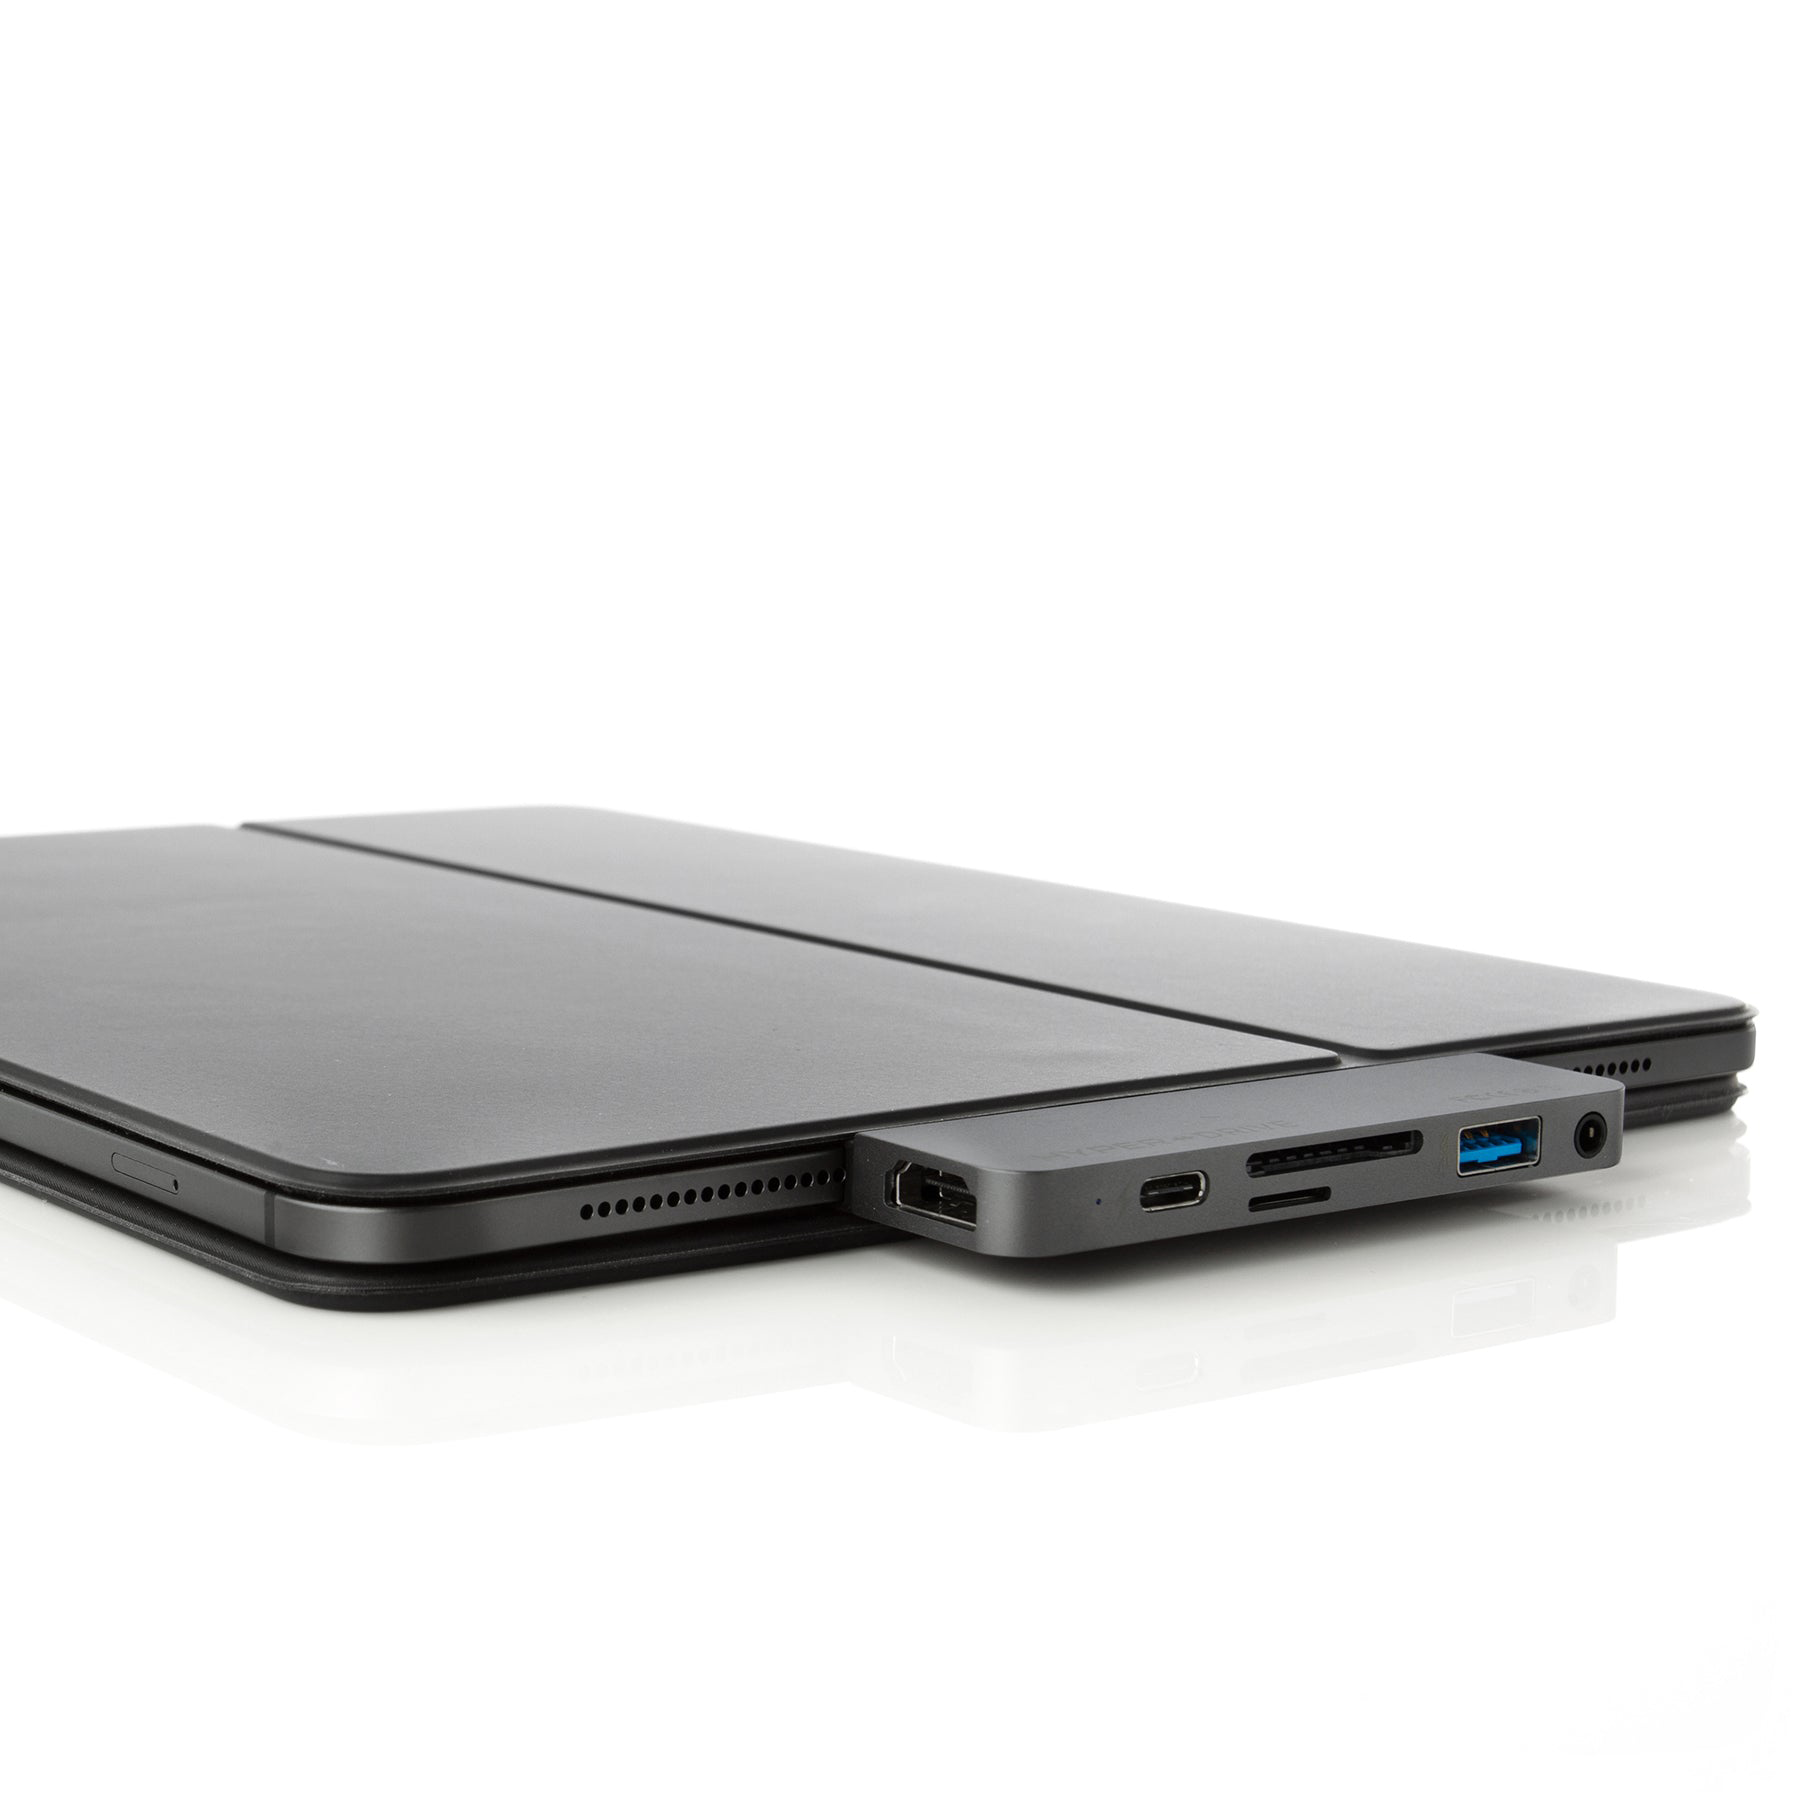 อุปกรณ์เชื่อมต่อ Hyper รุ่น HyperDrive 6-in-1 USB-C Hub for iPad Pro - สีเทา